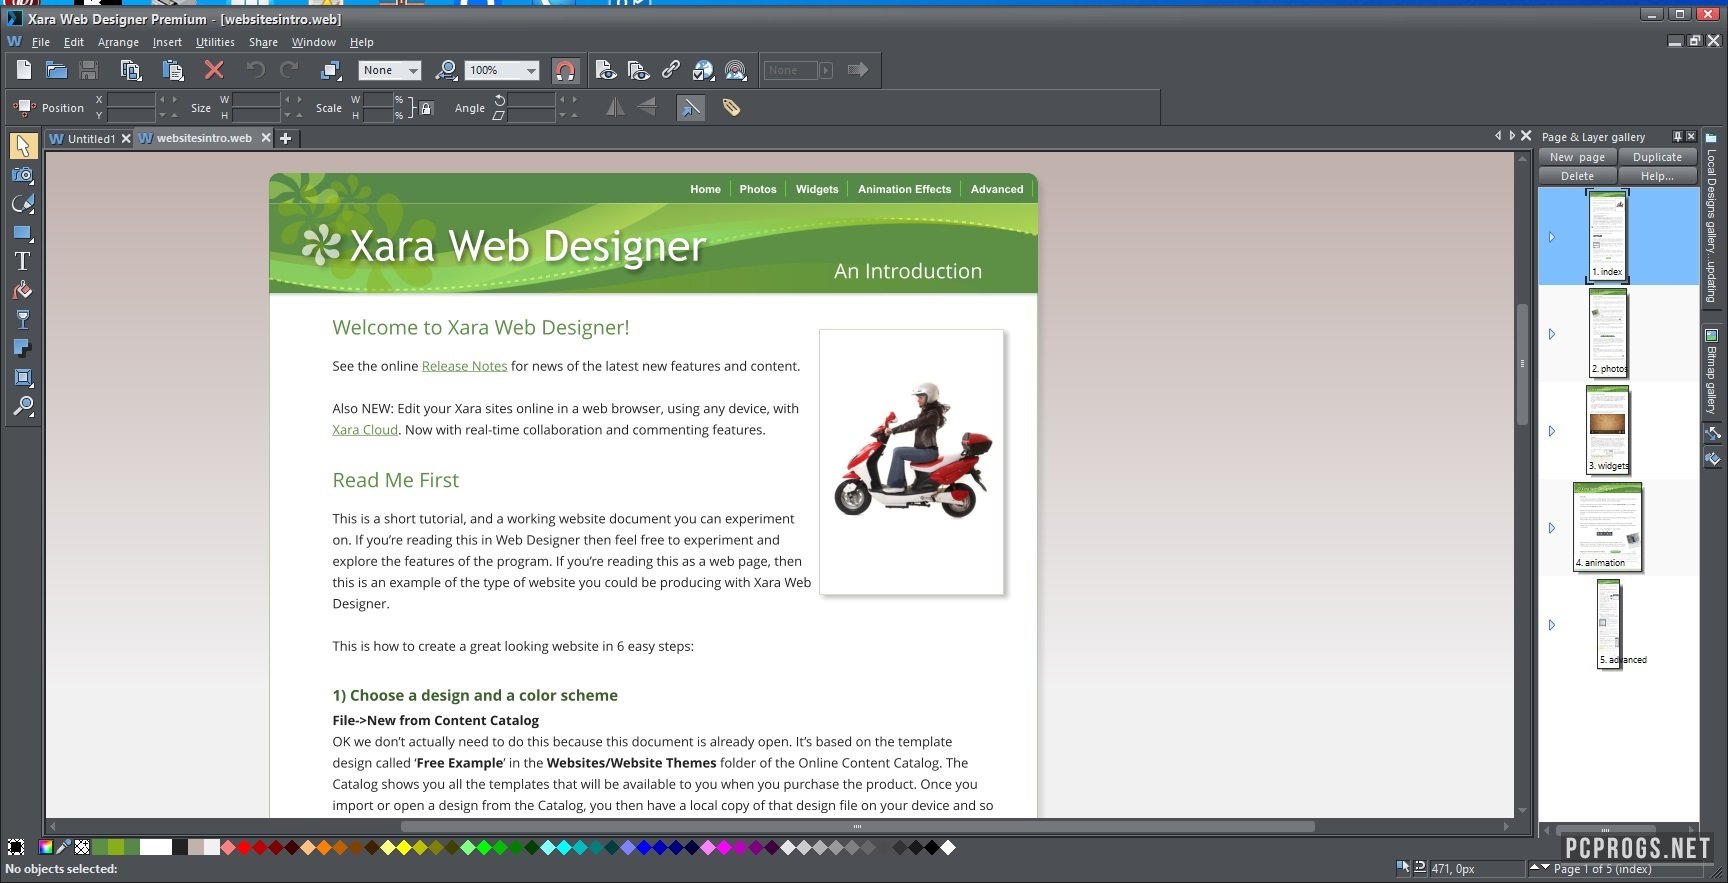 Xara Web Designer Premium 23.4.0.67661 instal the last version for ios